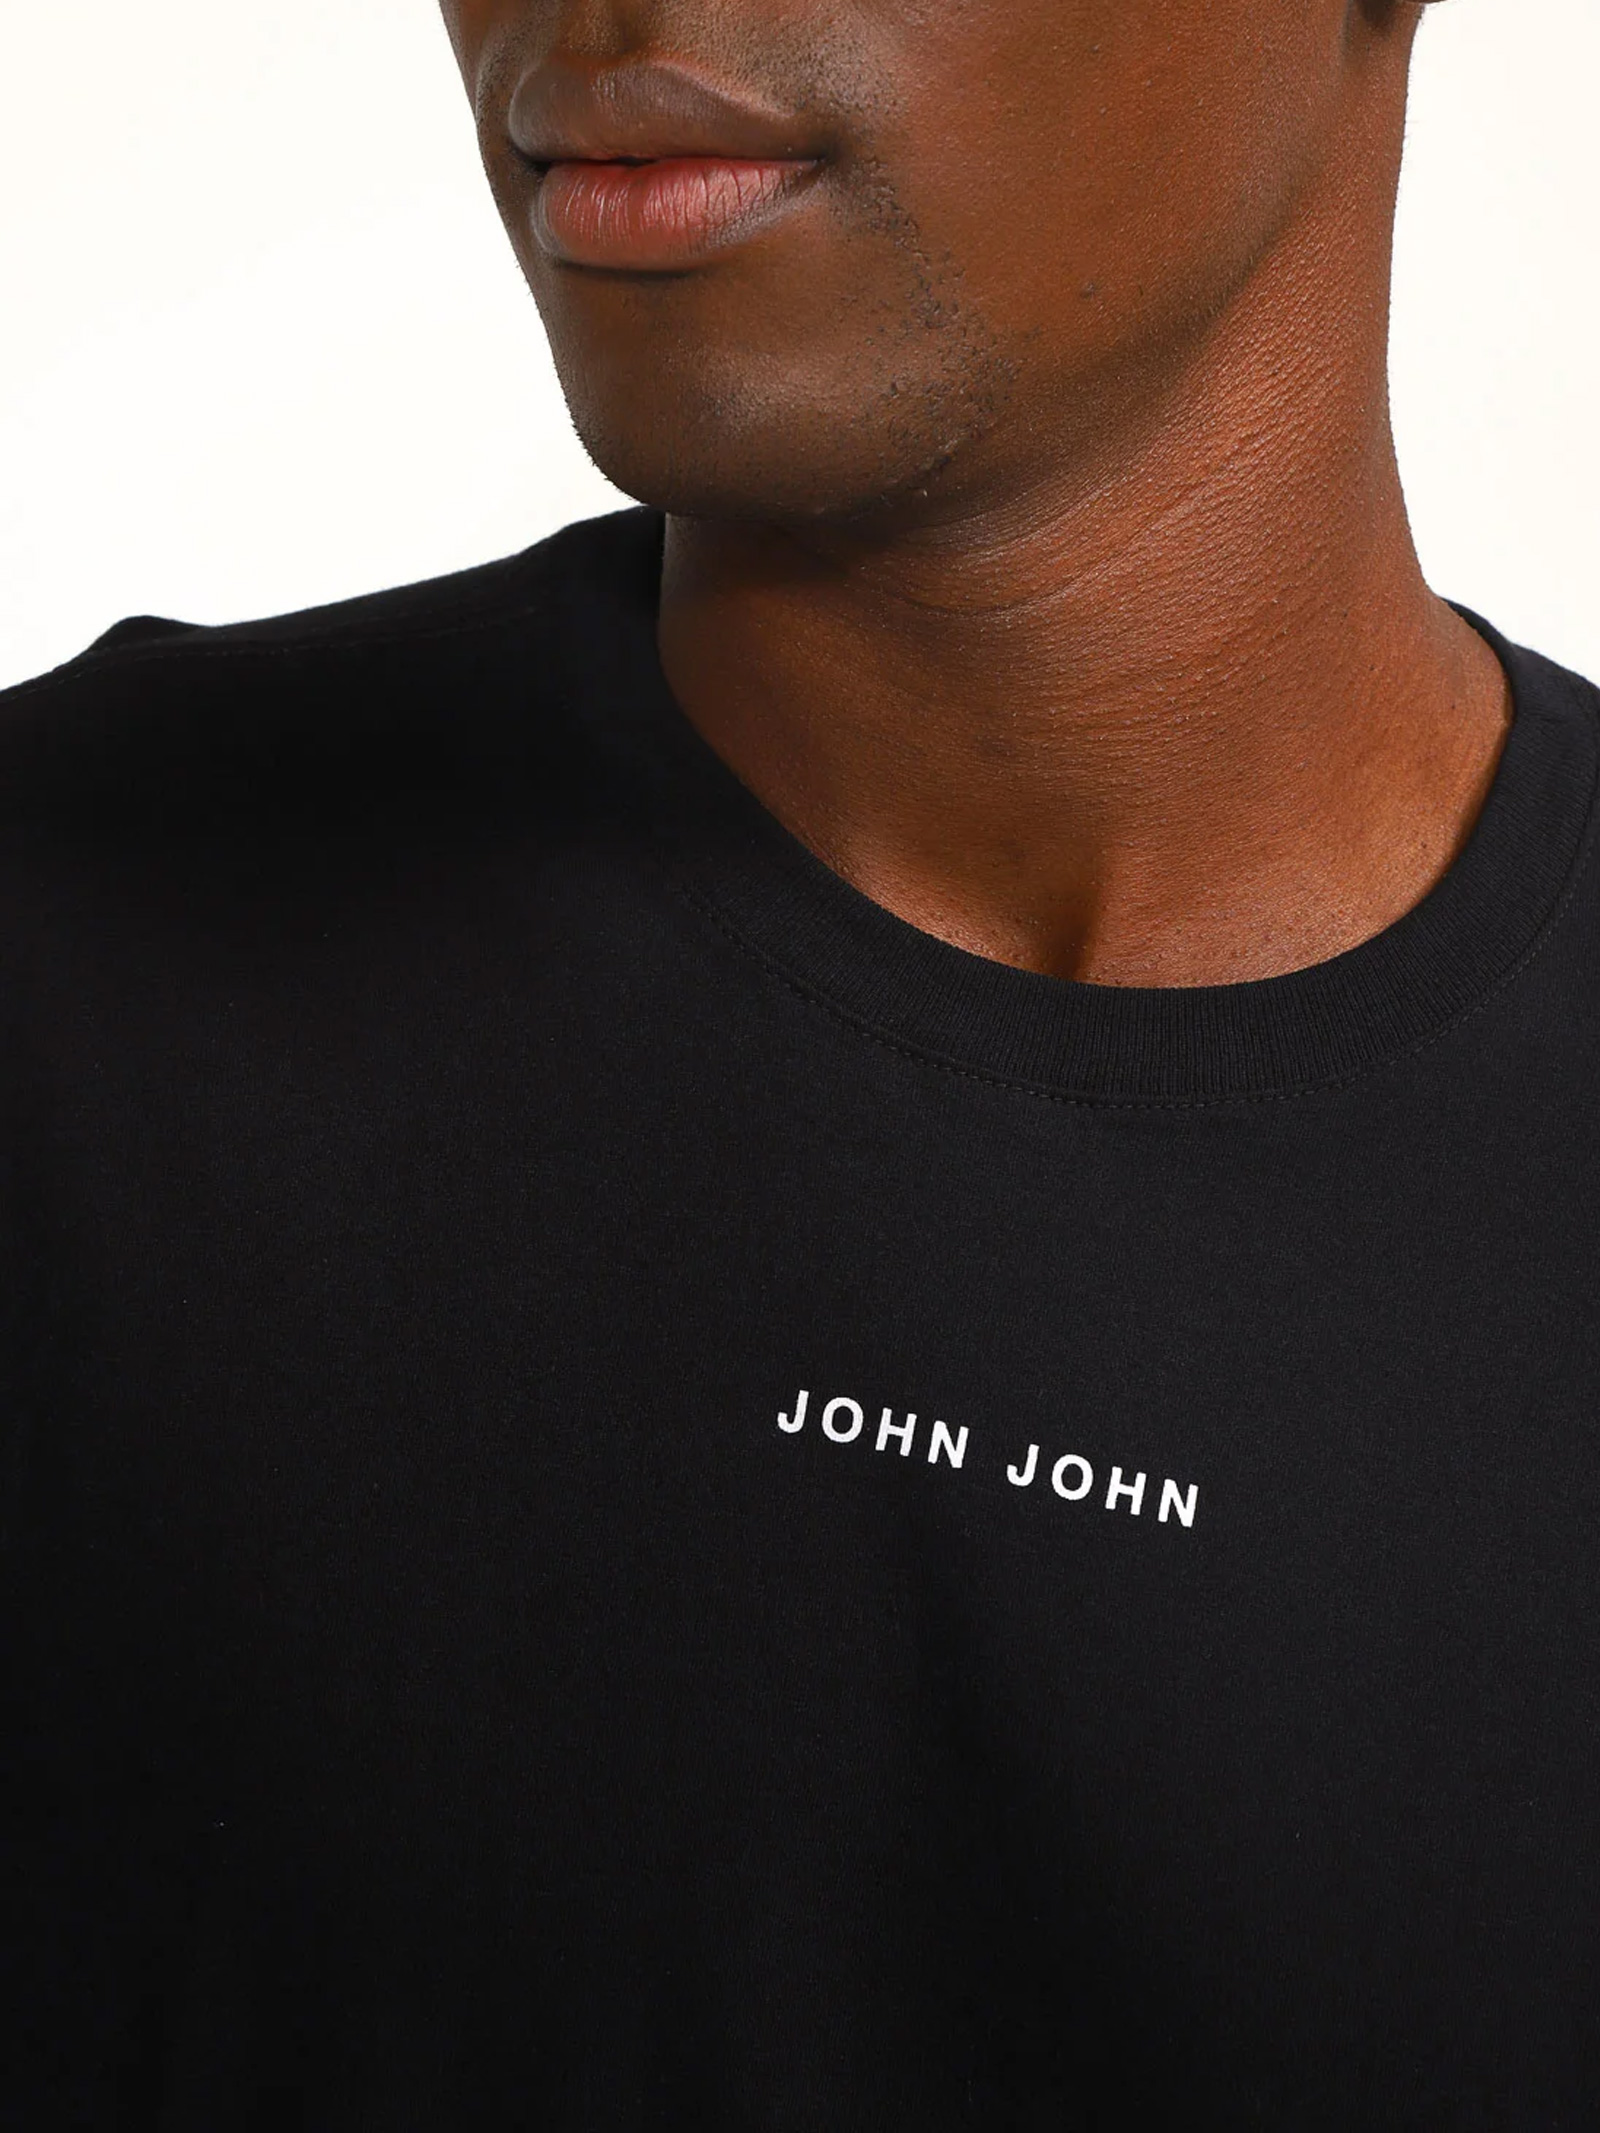 Camiseta John Cuts Preto John John